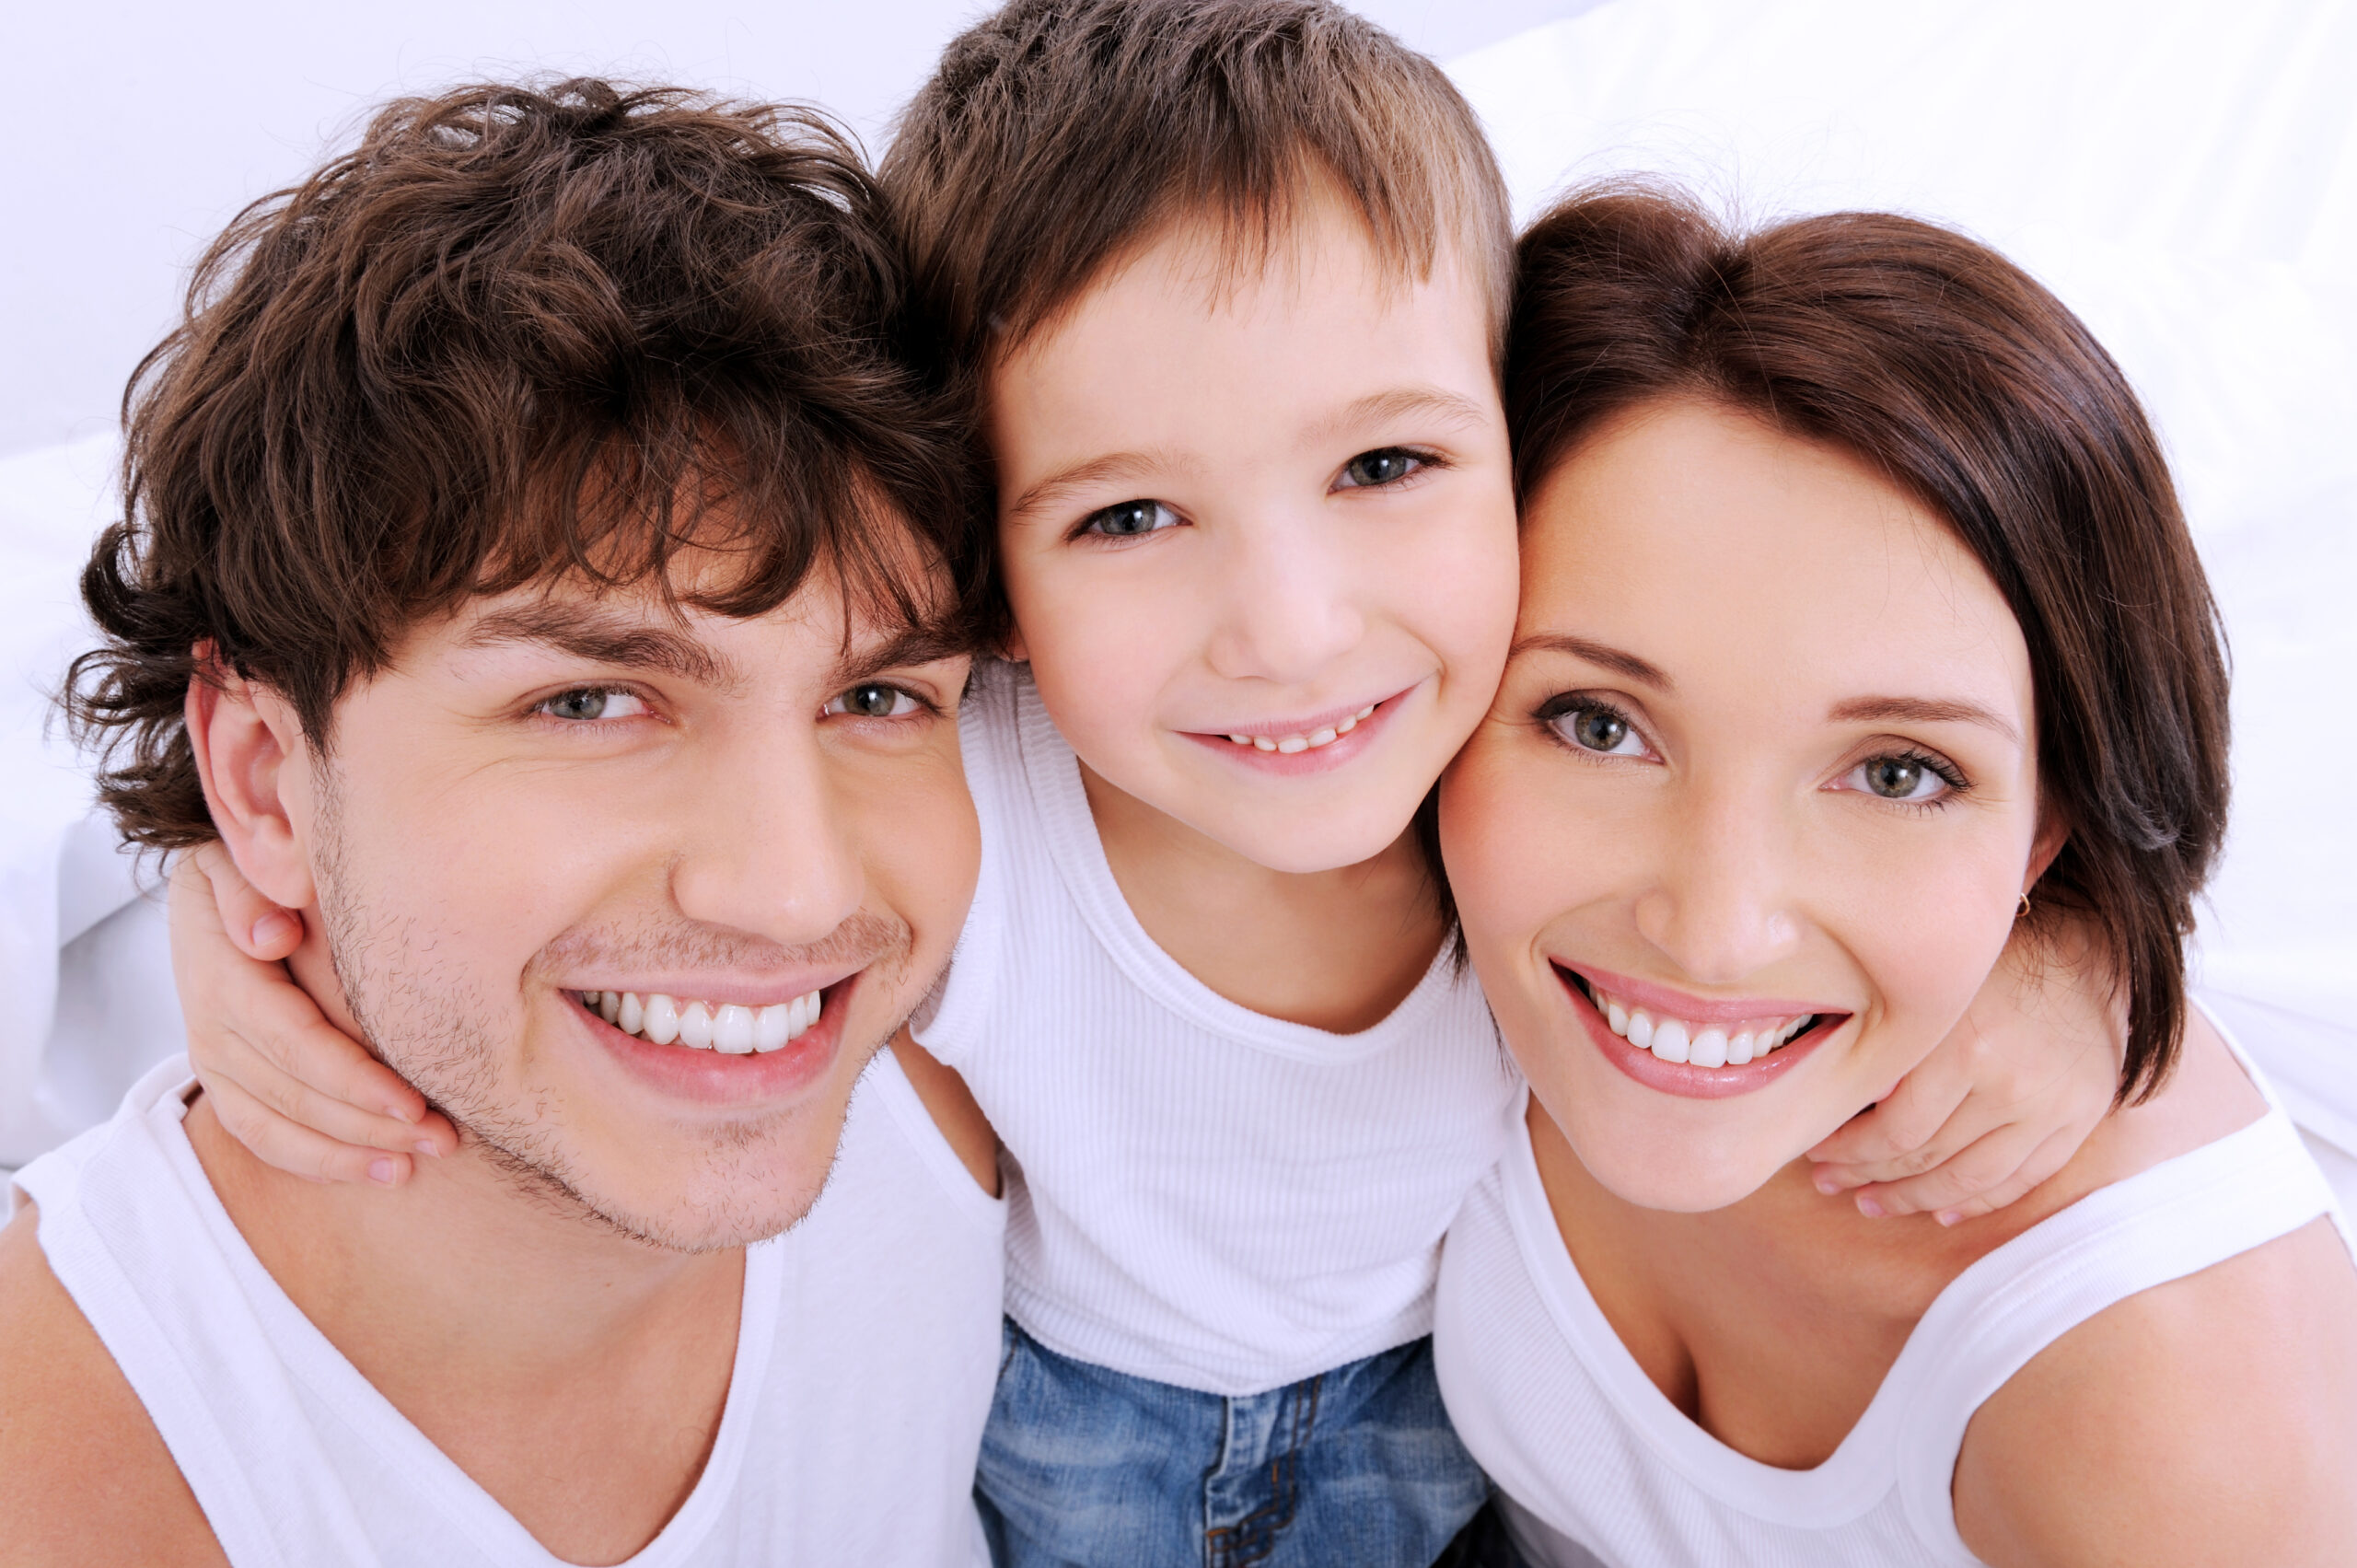 Семья с детьми до 7 лет. Красивая улыбка. Красивые зубы. Семья улыбается. Портрет счастливой семьи.